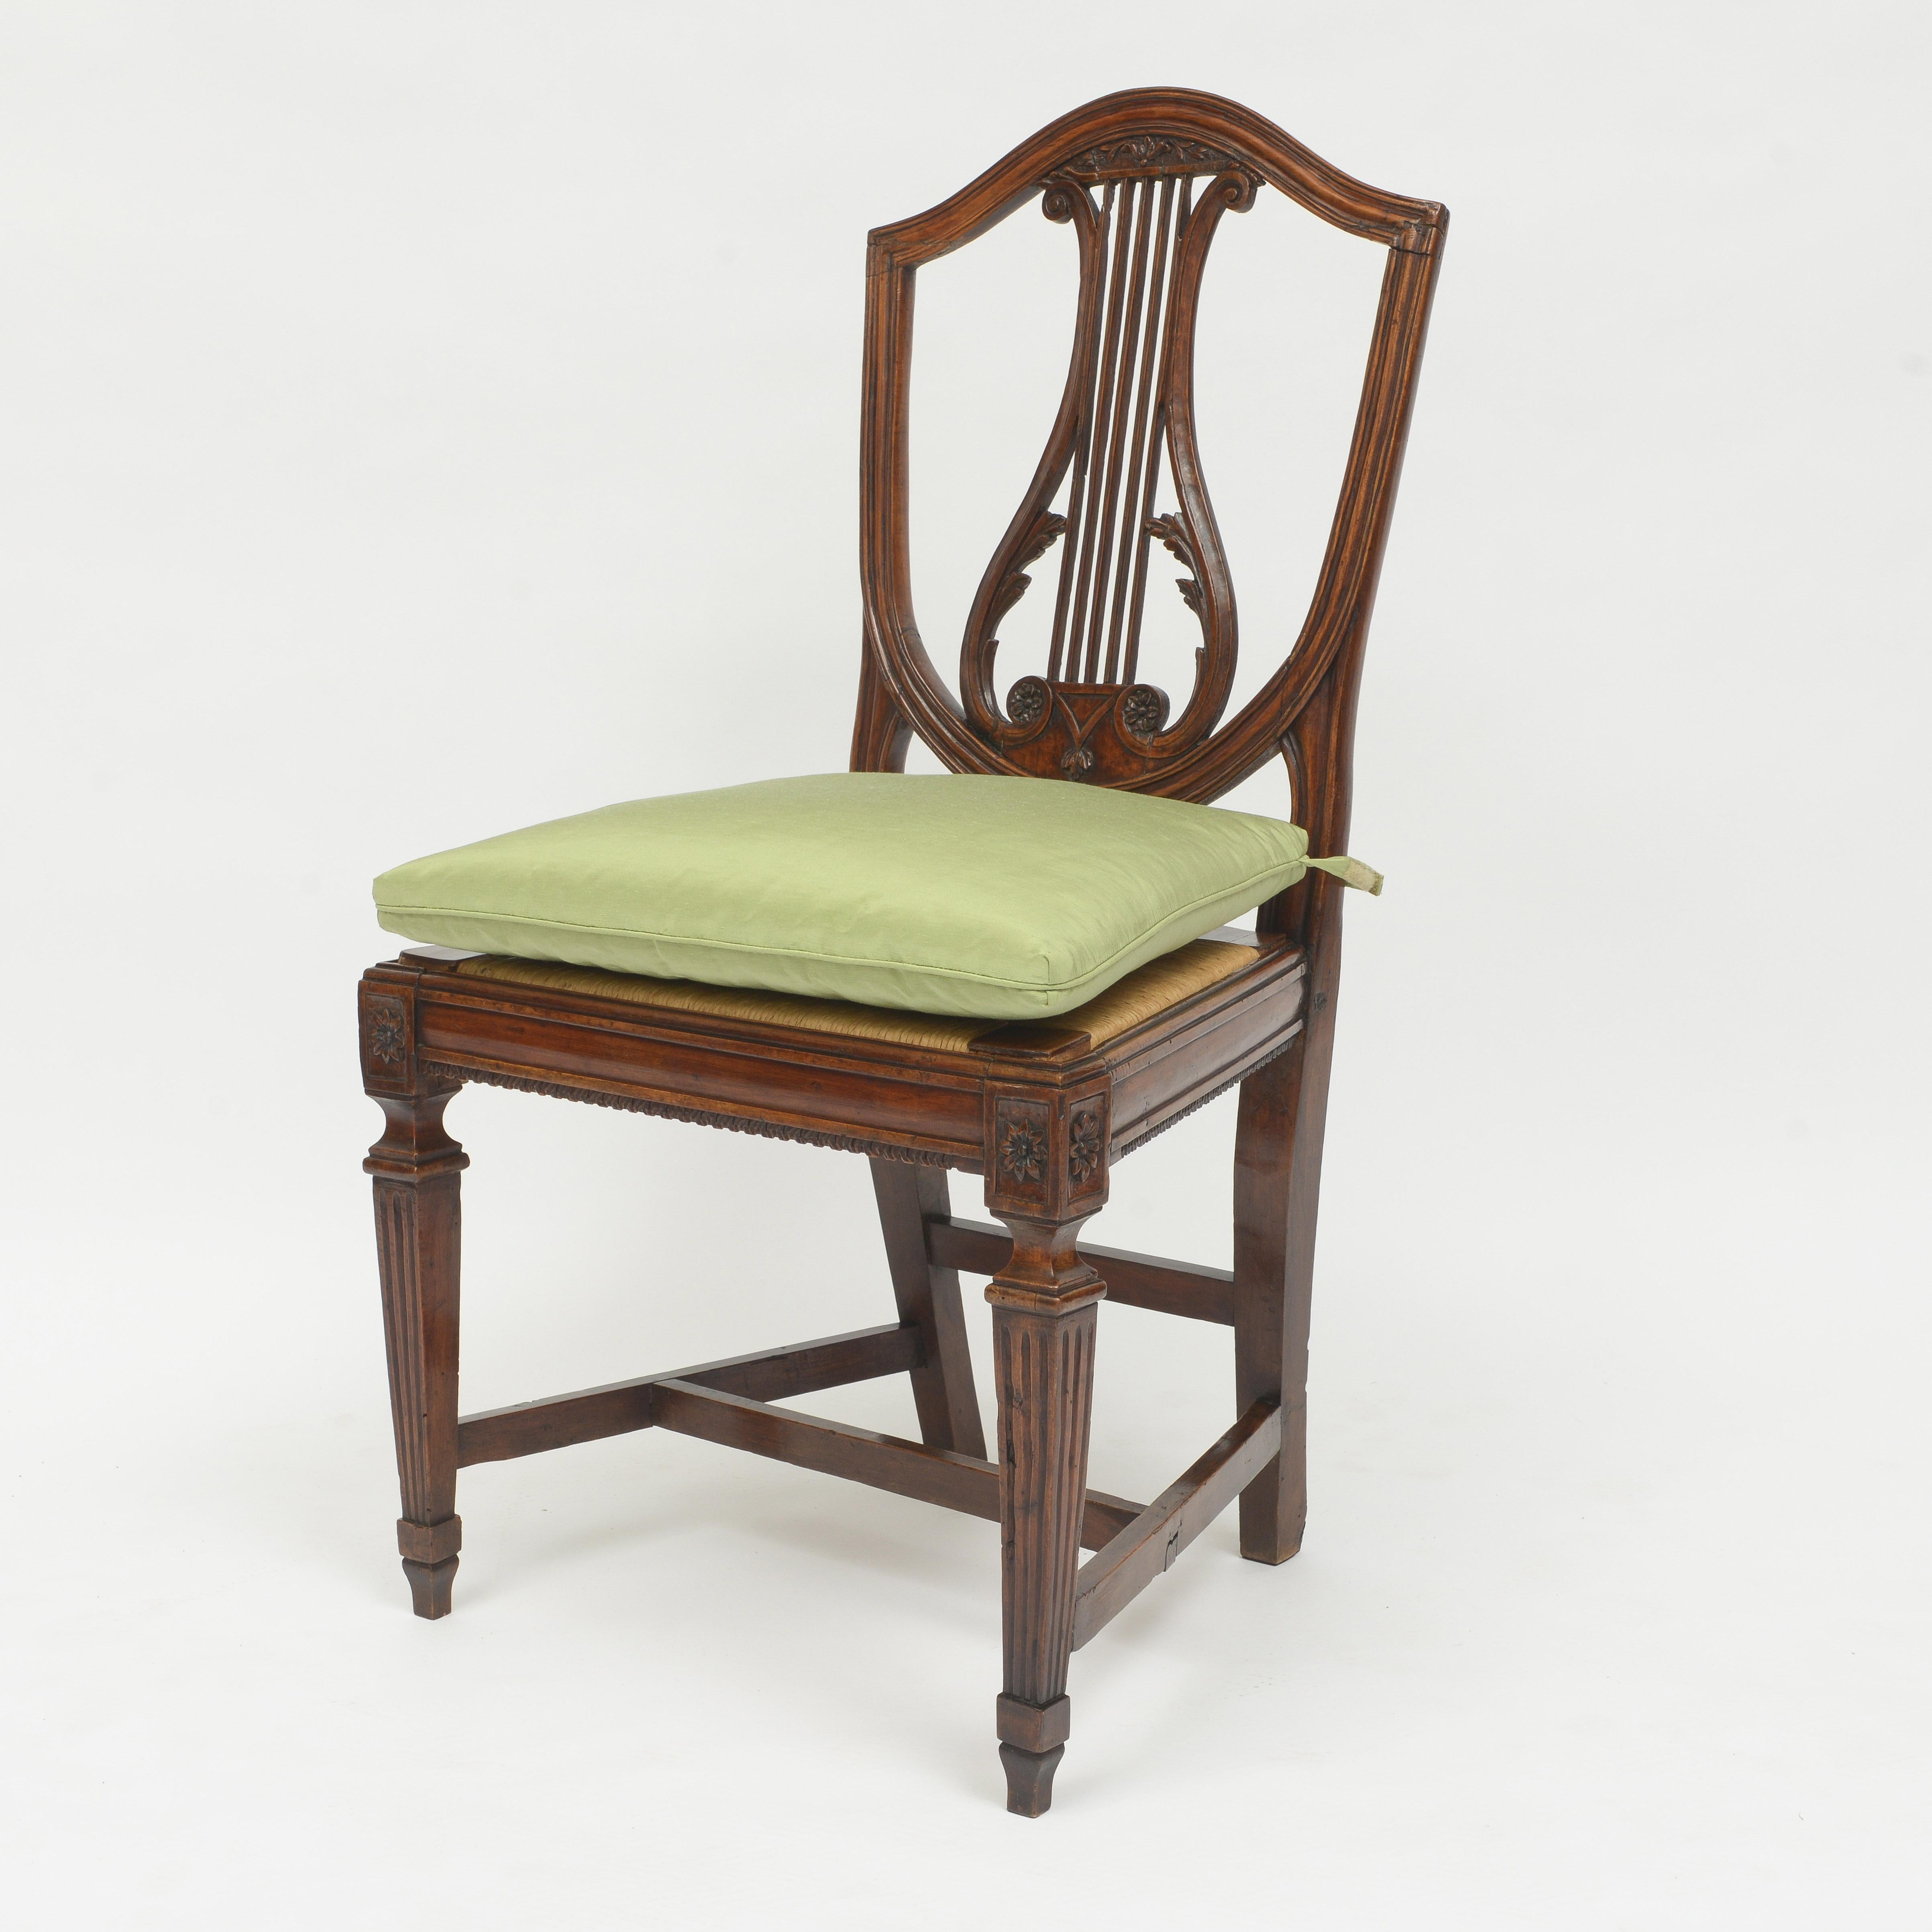 Satz von fünf italienischen Nussbaum-Esszimmerstühlen
Vergoldeter Rücken mit zentralem Lyra-Design
Binsenrohrsitze über kannelierten Beinen mit Spatenfuß
Sitzkissen mit einseitig eingefasstem, salbeifarbenem Stoff